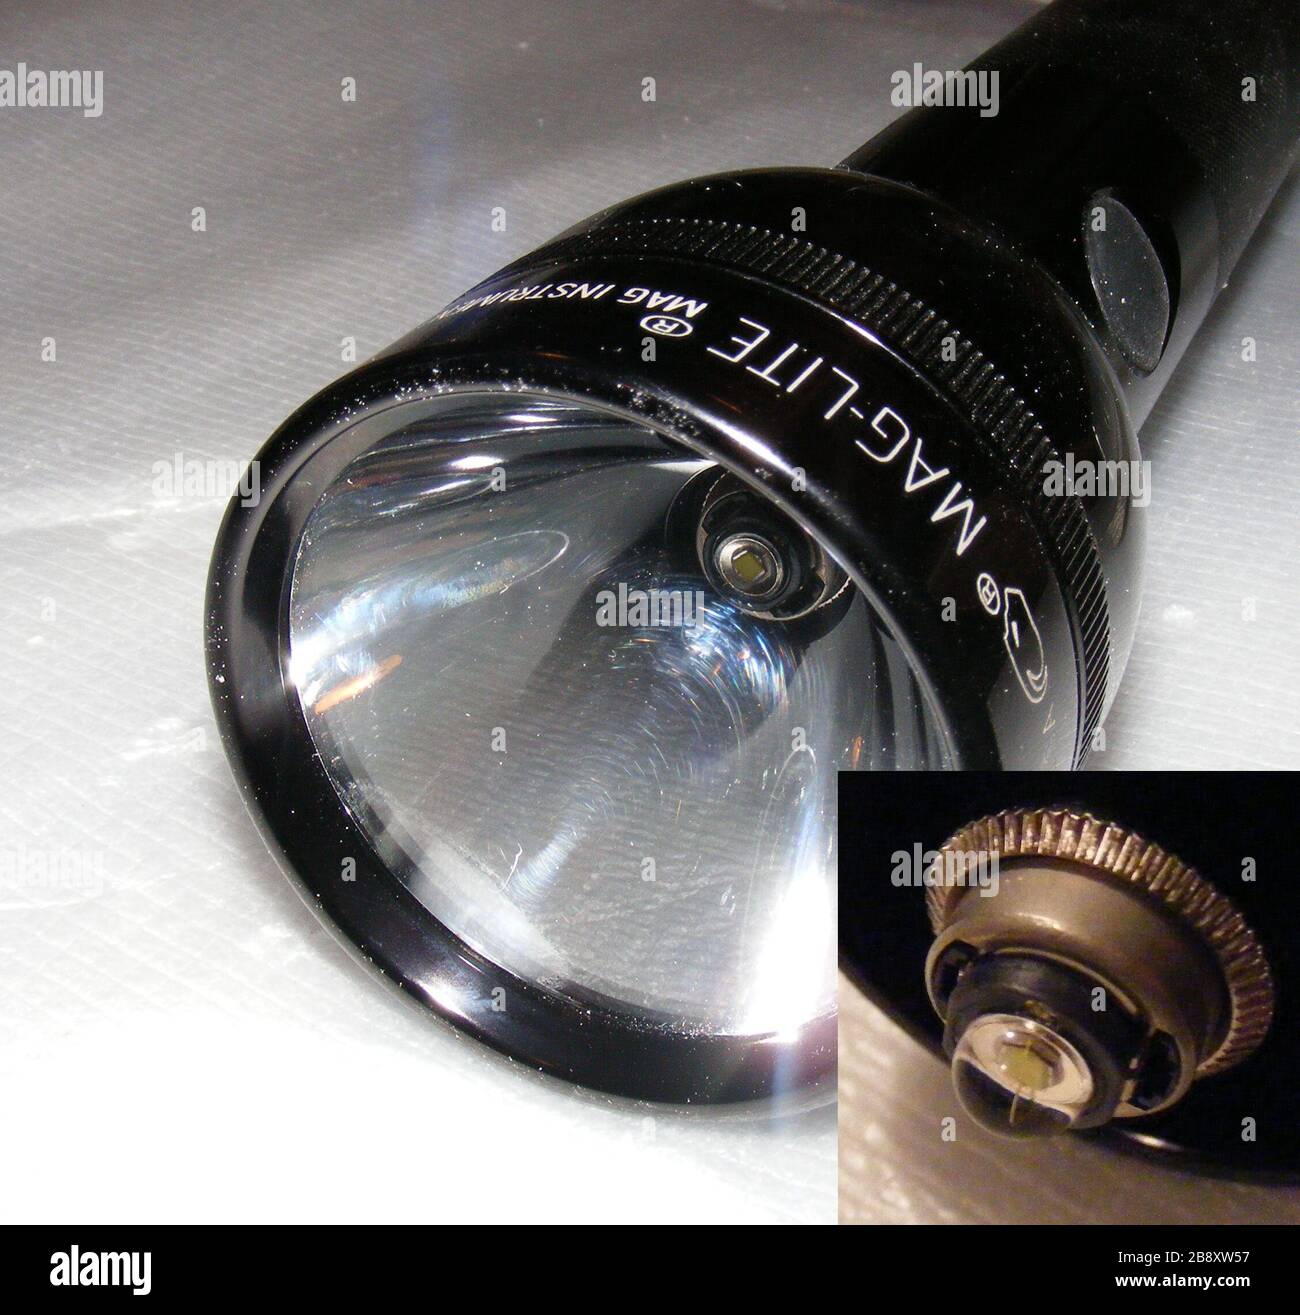 Inglés: fotografía detallada de una linterna Maglite 4-D con un LED Luxeon  de 3 vatios módulo instalado. El recuadro en la esquina inferior derecha es  una macro shot del módulo LED con